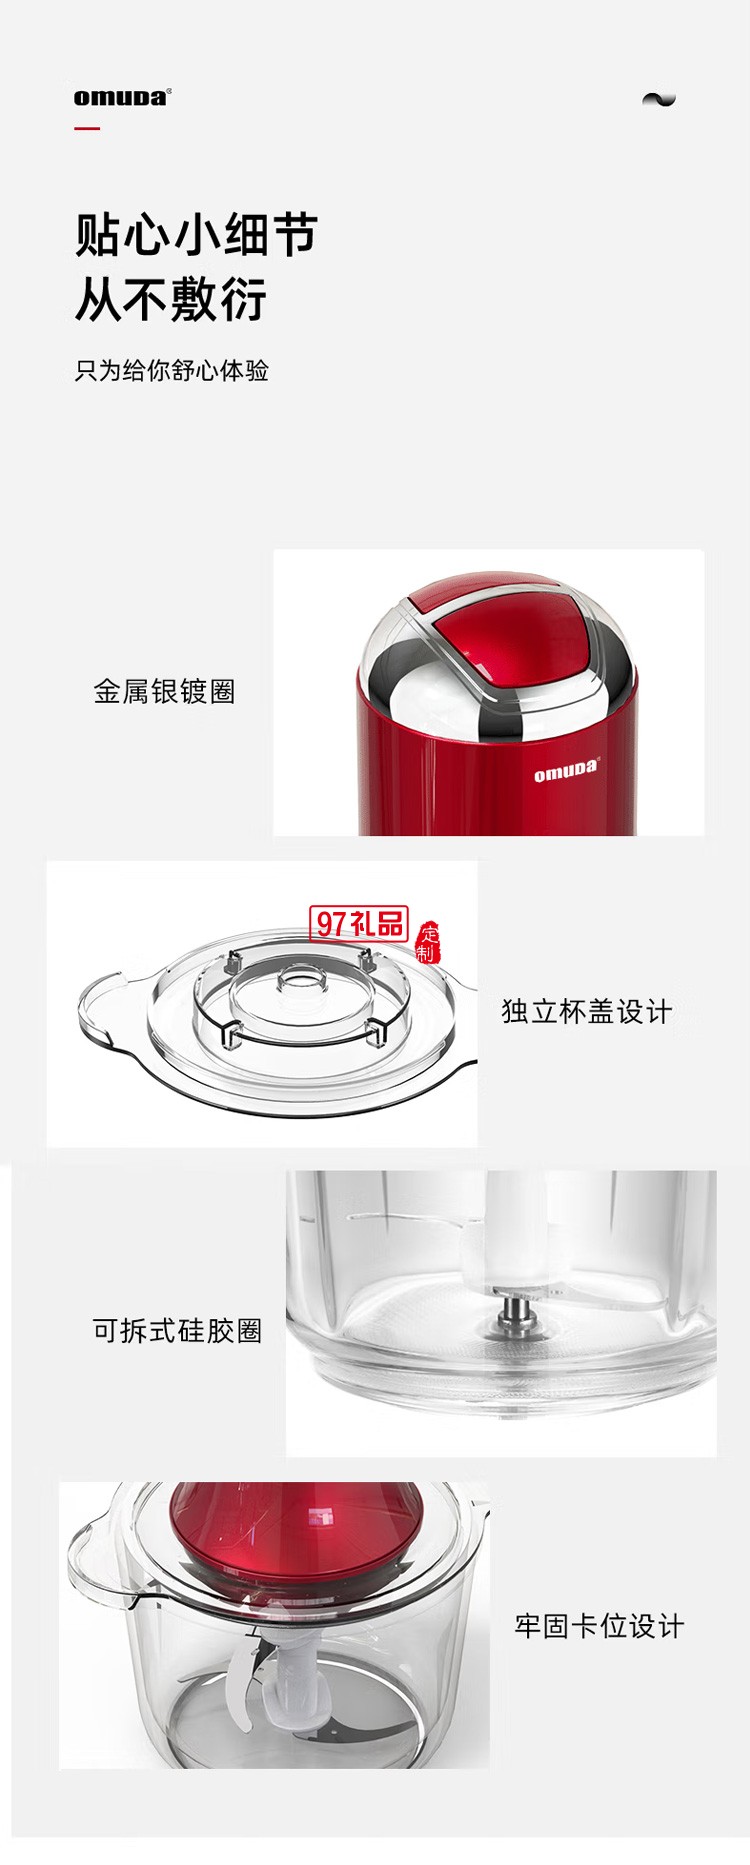 欧美达绞肉机电动小型绞肉馅机SD-JR2307定制公司广告礼品